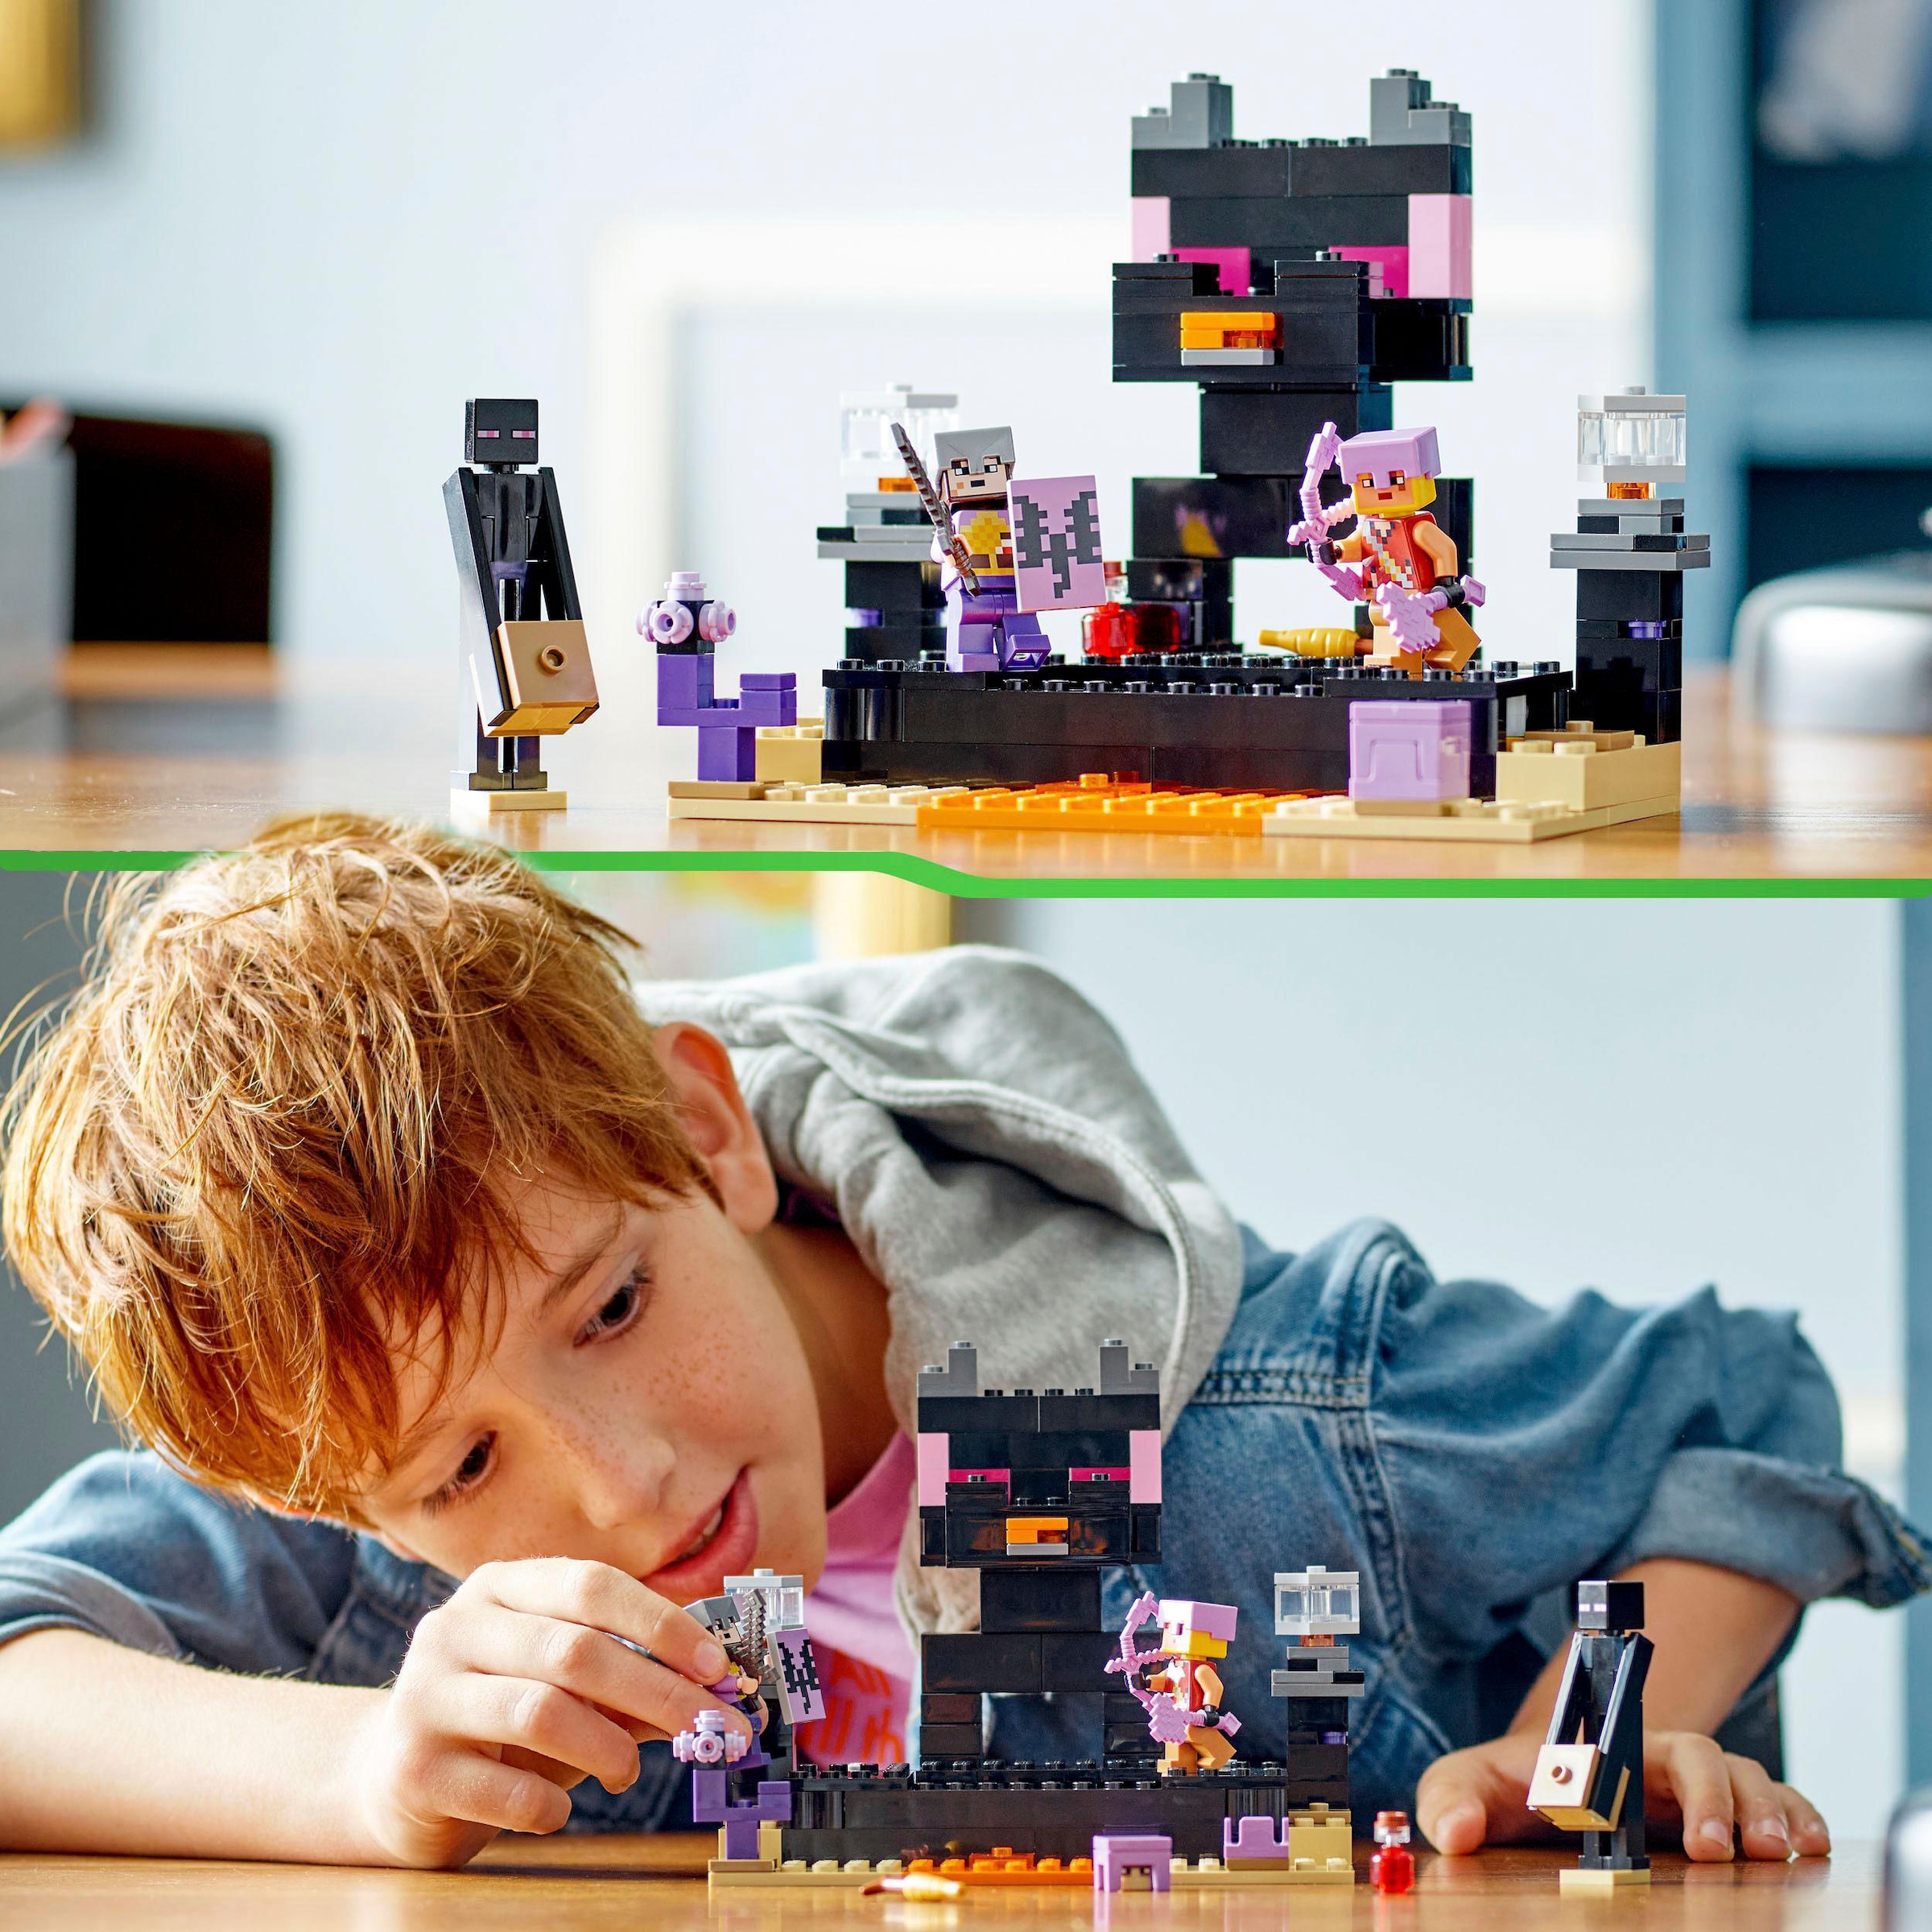 LEGO® Konstruktionsspielsteine »Die End-Arena (21242), LEGO® Minecraft«, (252 St.), Made in Europe